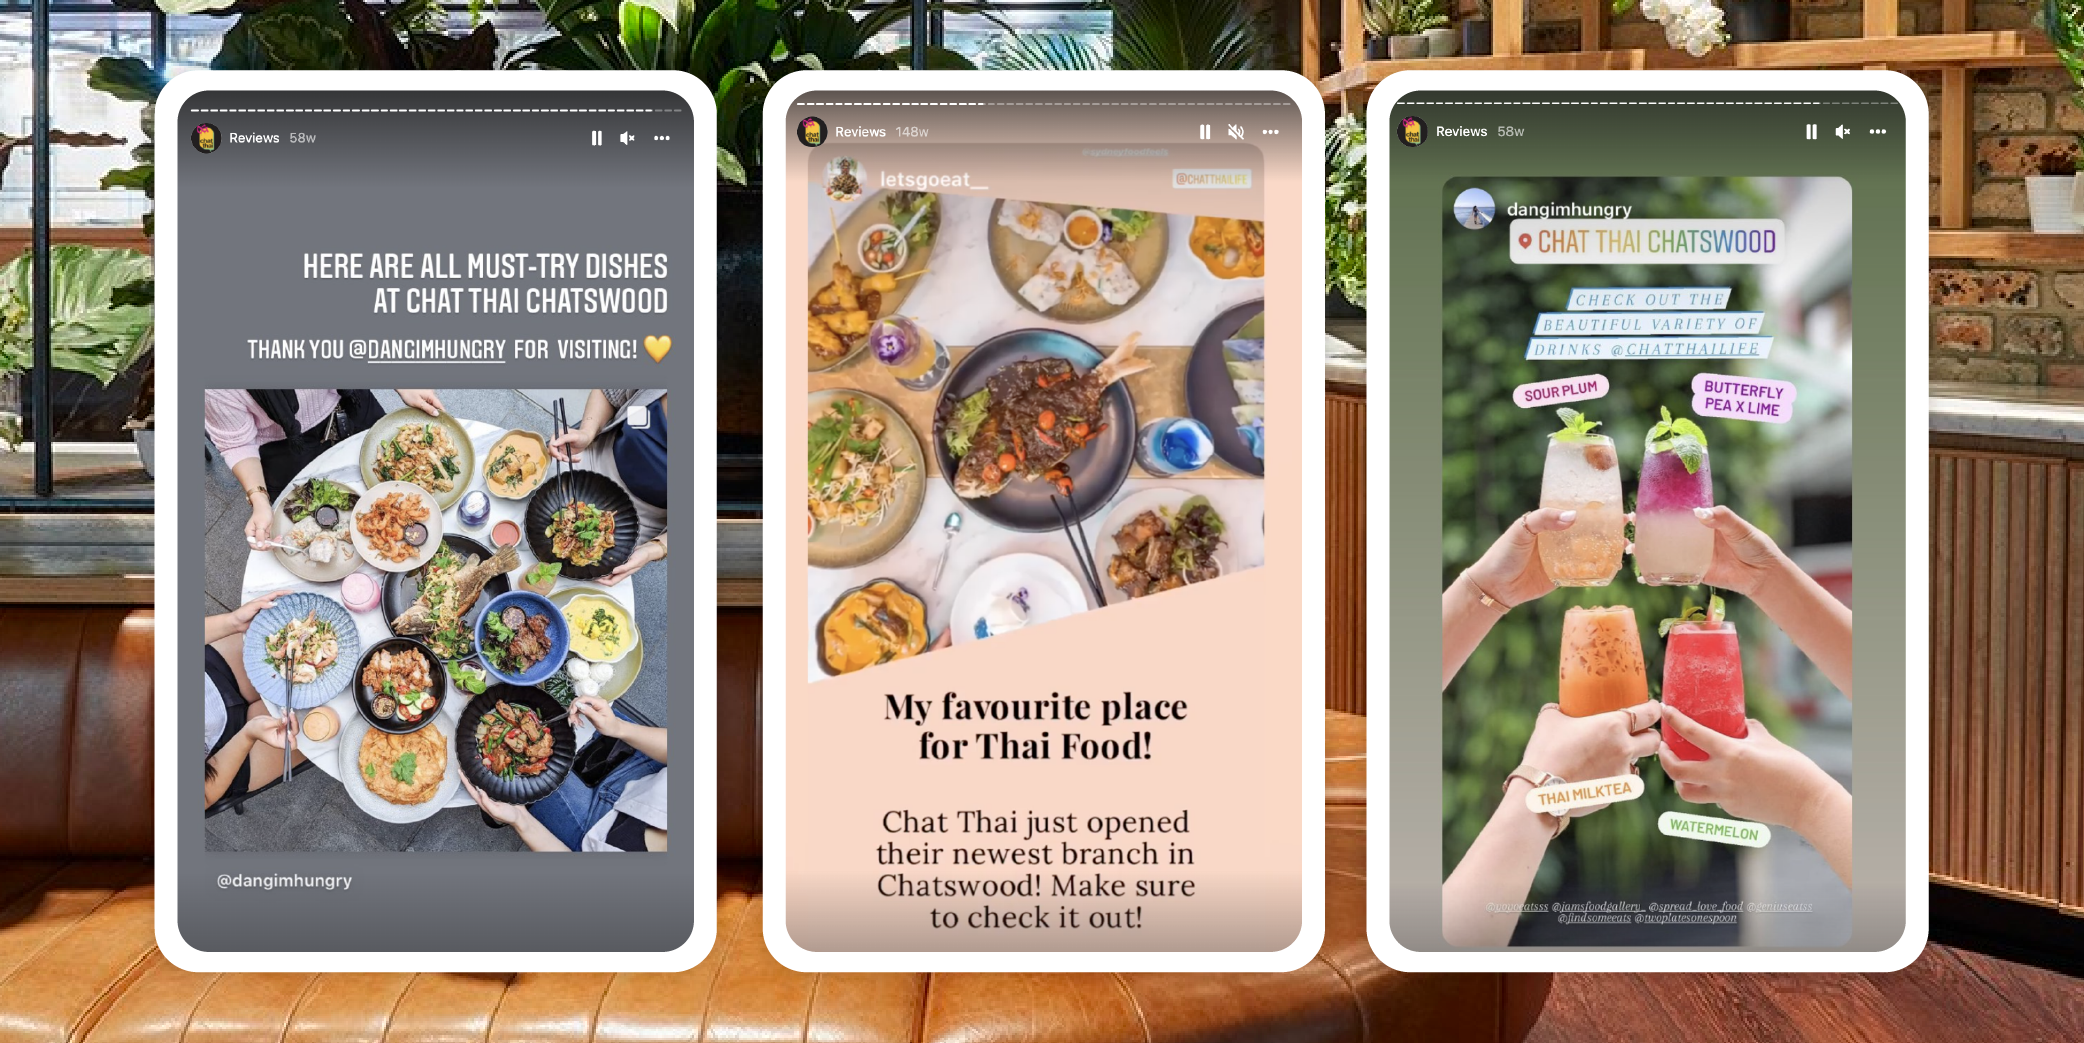 3 social media reviews from Instagram for Chat Thai's restaurants.